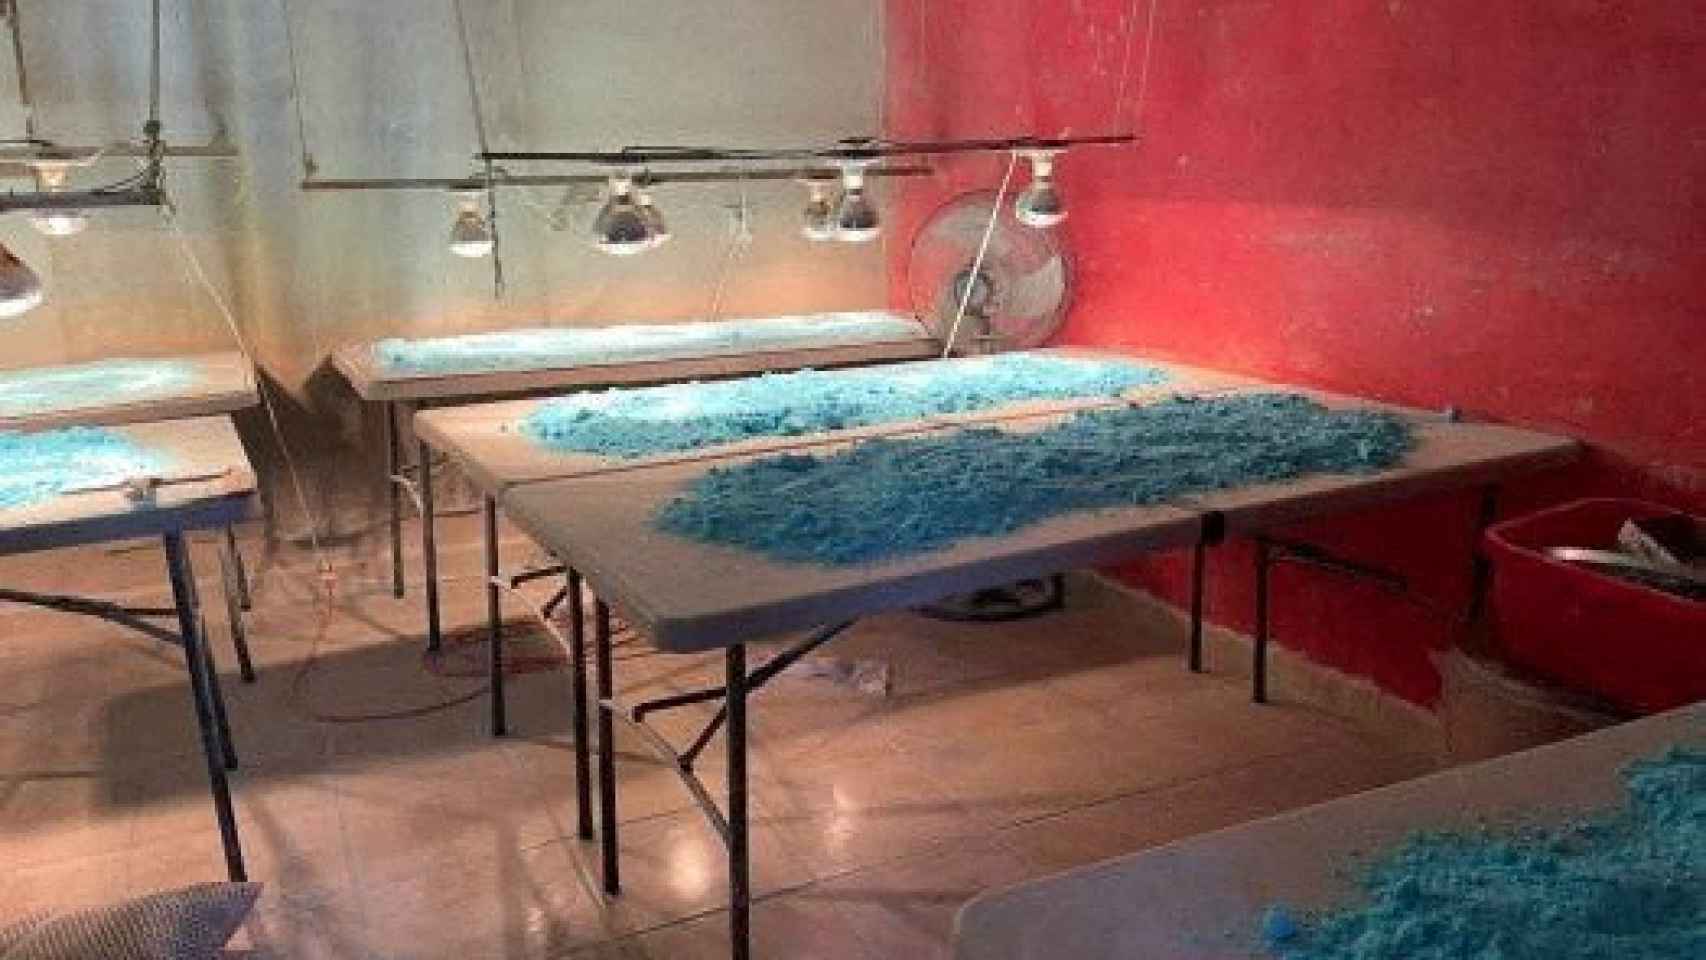 Un laboratorio de 'polvo azul' incautado por el Ejército mexicano en Culiacán, el pasado mes de febrero.